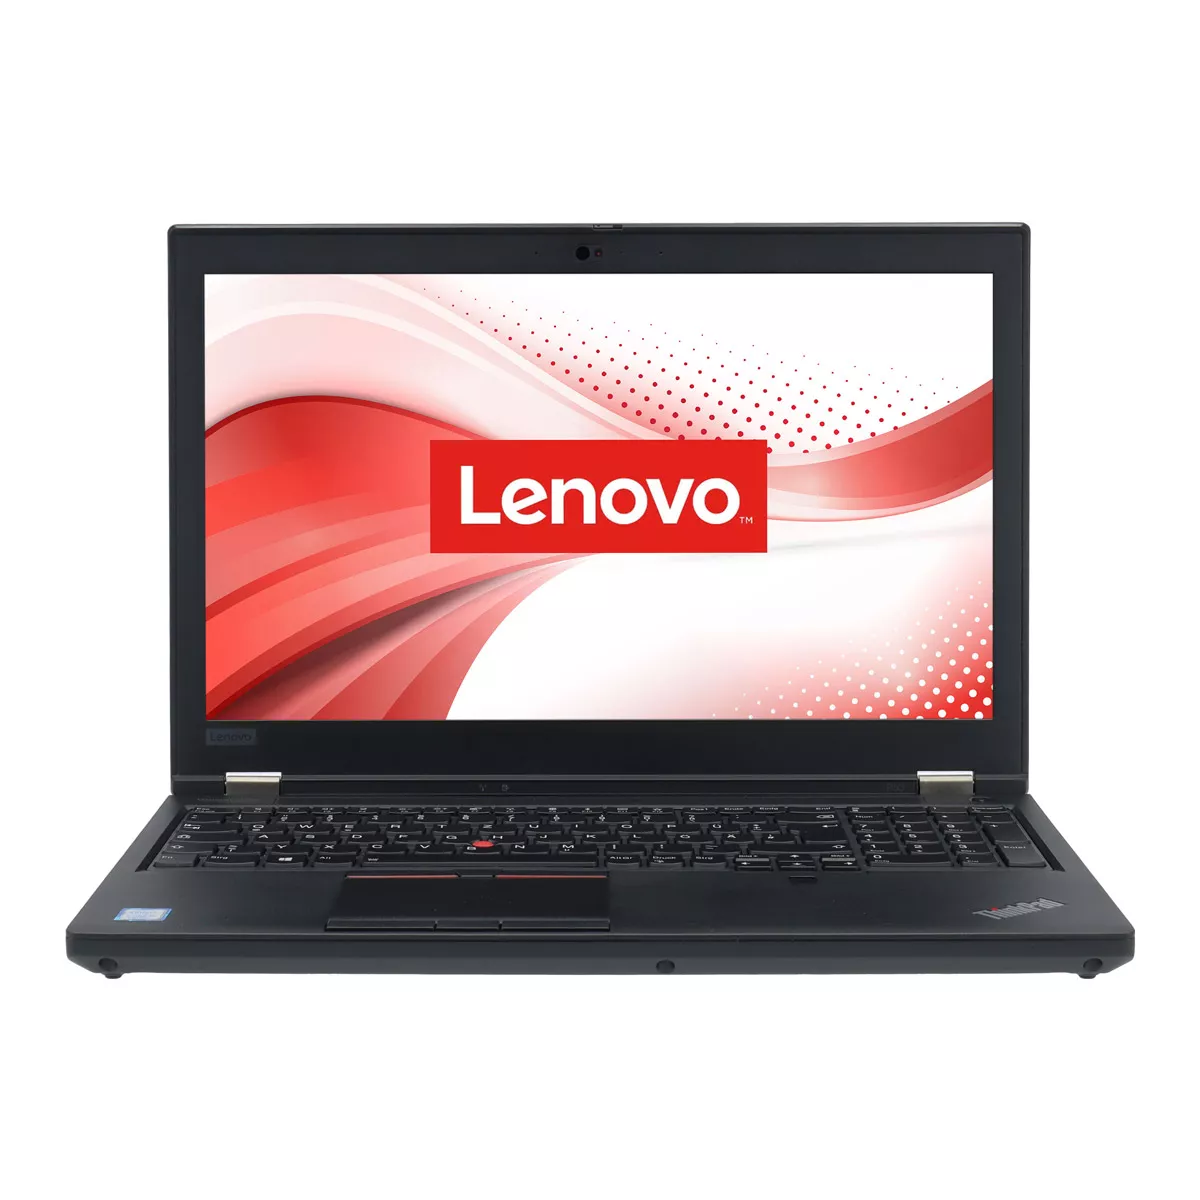 Lenovo ThinkPad P53 Core i7 9750H nVidia Quadro T1000M 32 GB 500 GB M.2 SSD Webcam A